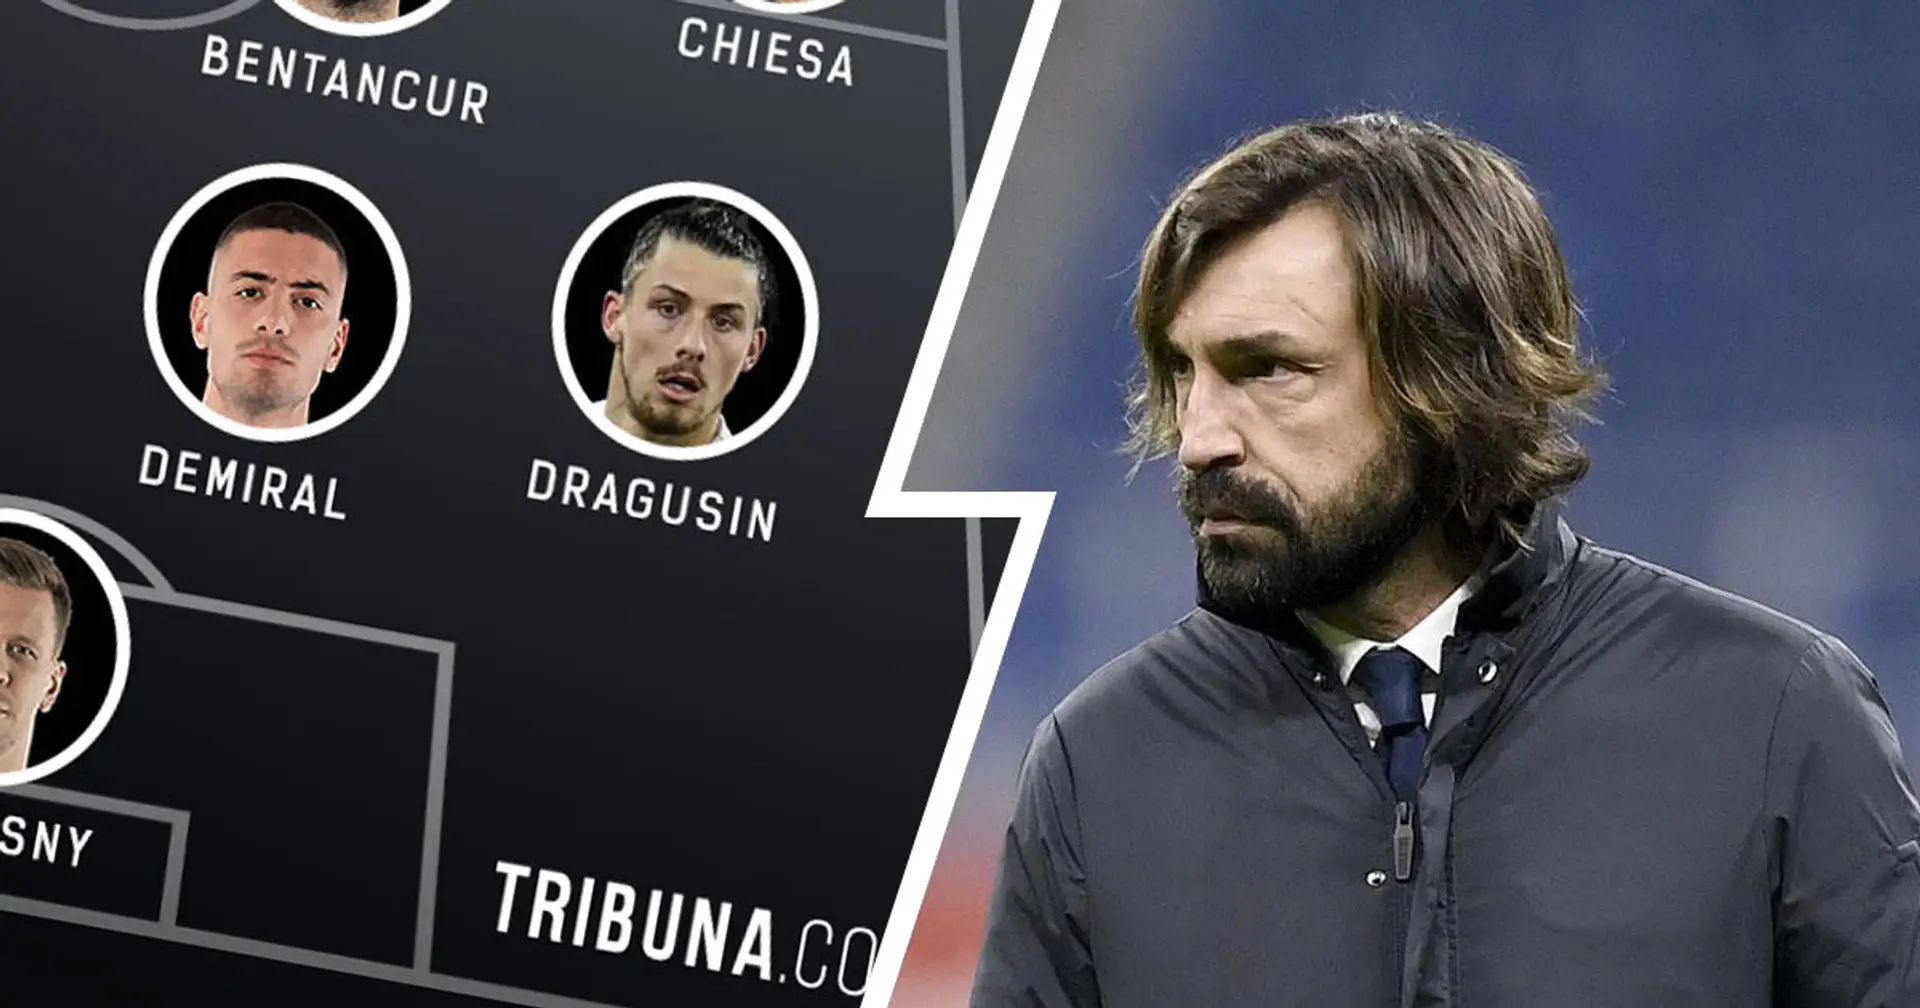 Le probabili formazioni di Hellas Verona-Juventus: esordio dal 1' per Dragusin, Rabiot a centrocampo